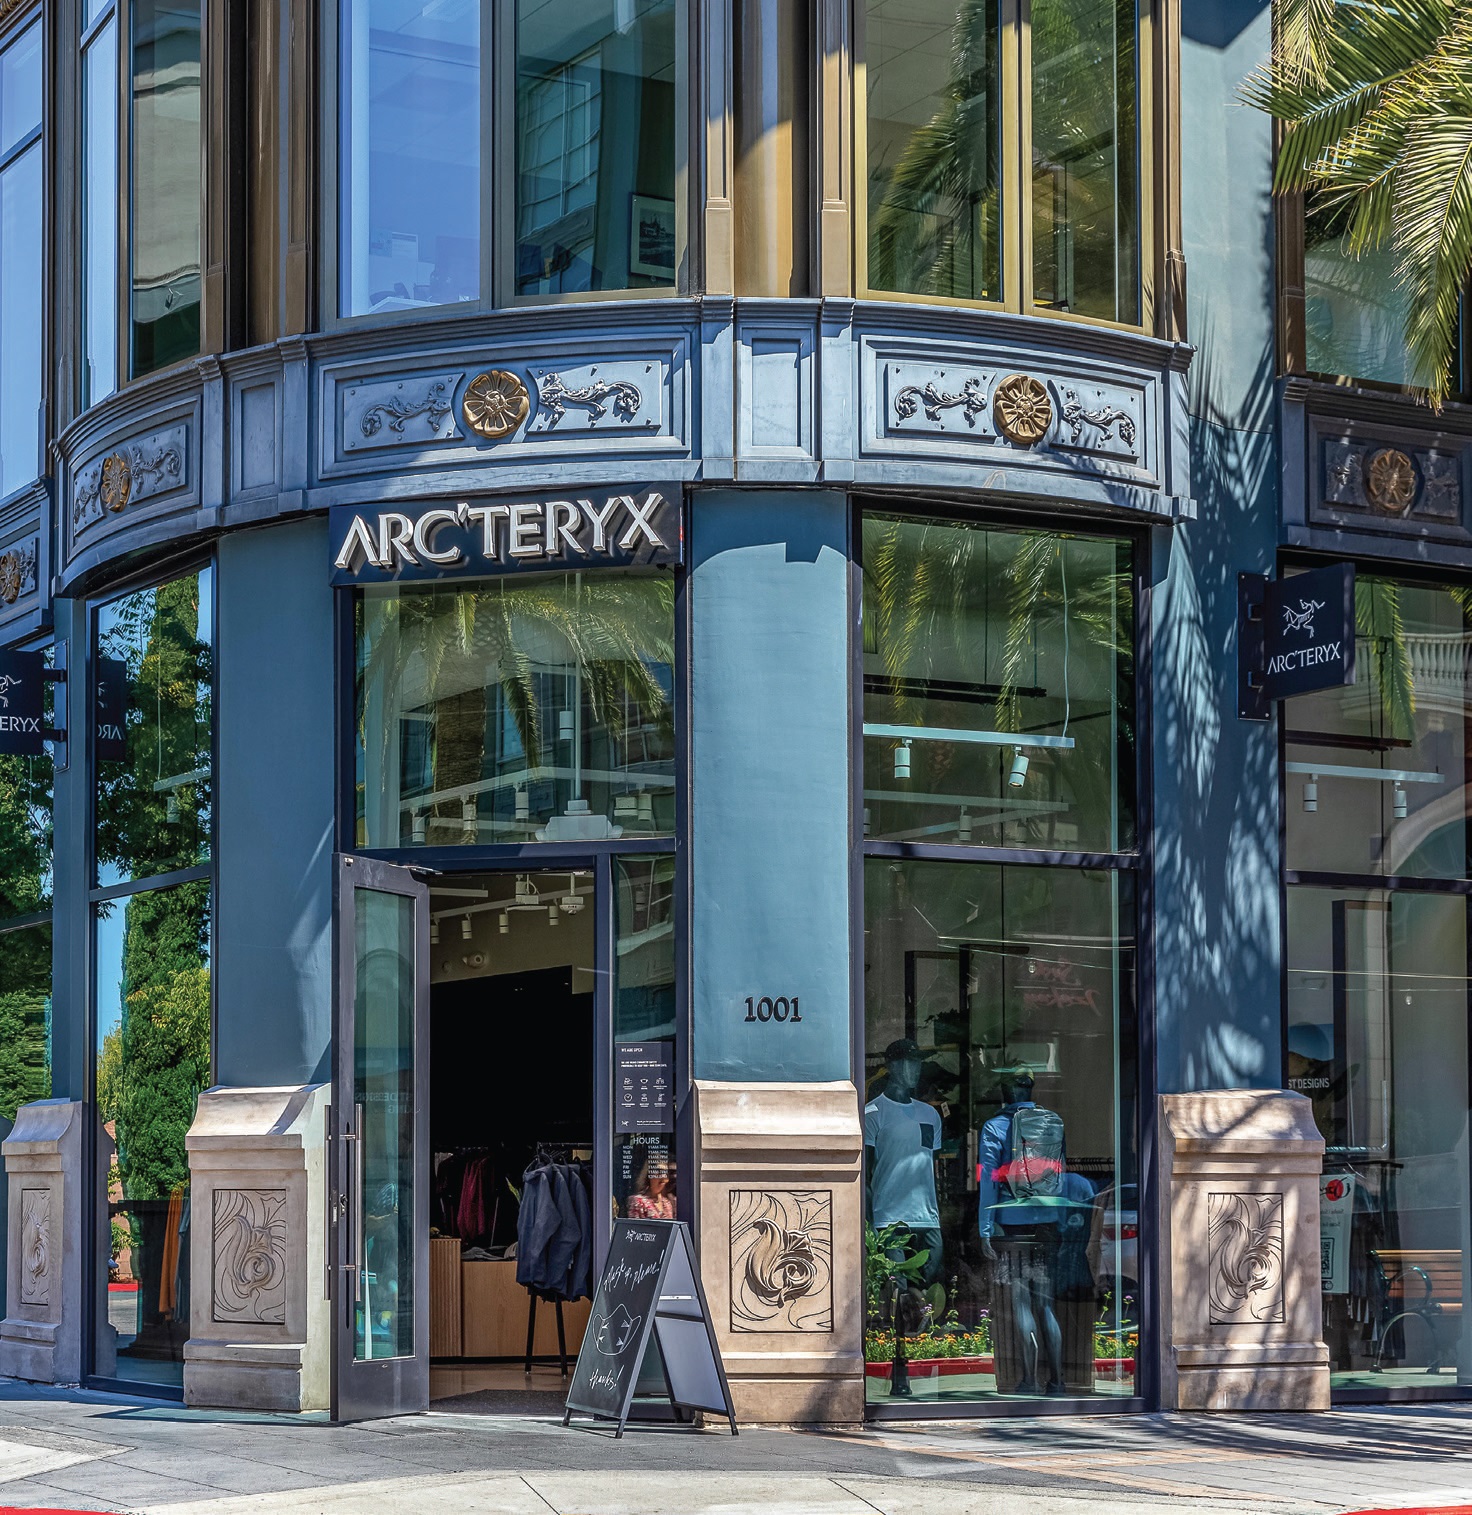 Arc’teryx is new to Santana Row. PHOTO COURTESY OF SANTANA ROW